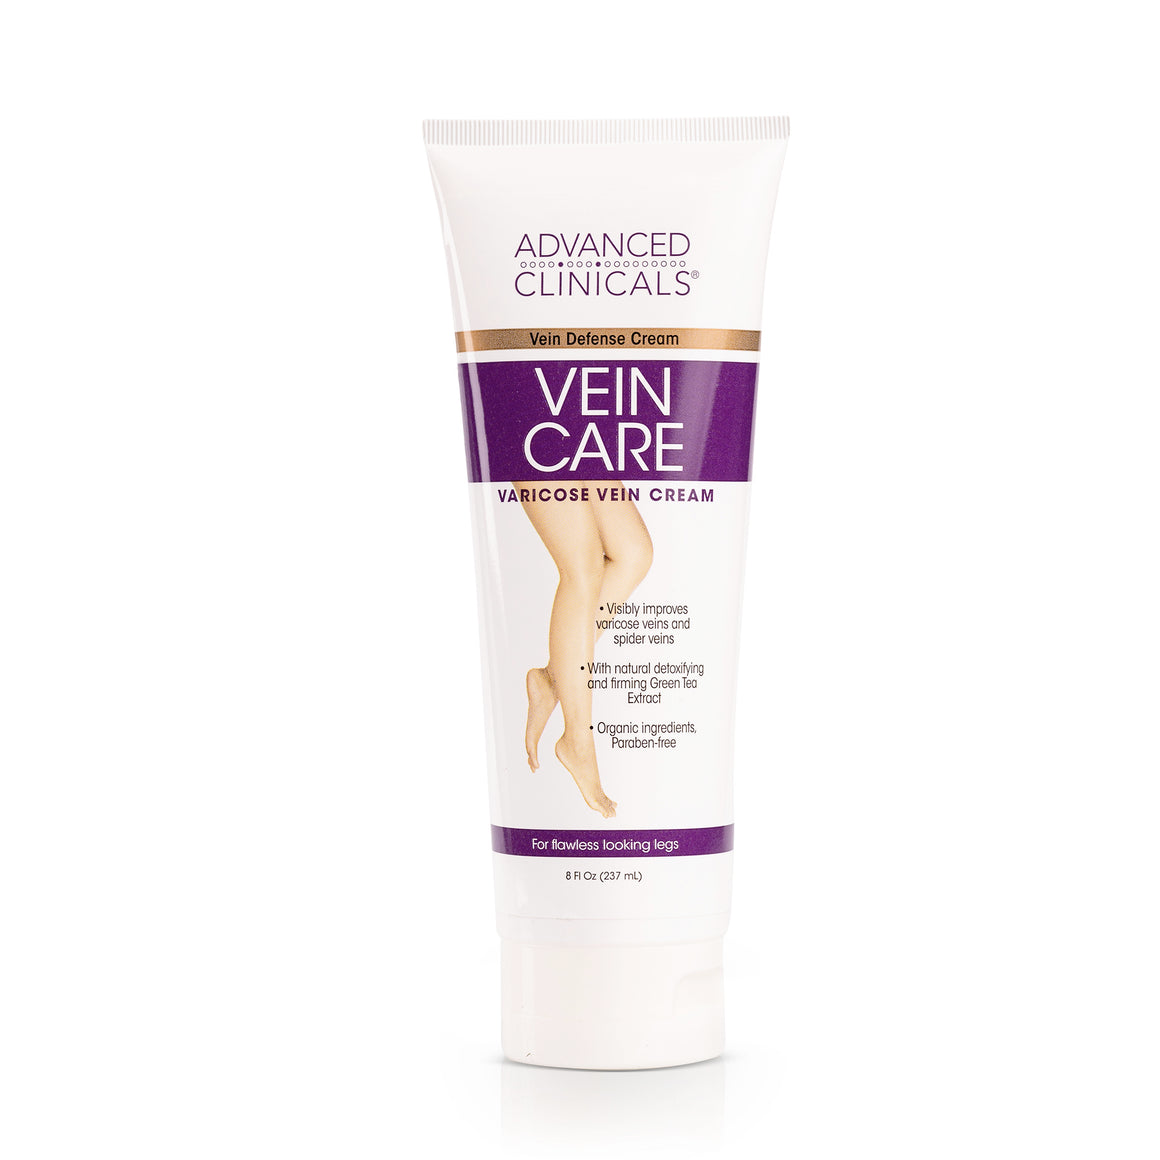 Vein Care Defense Cream